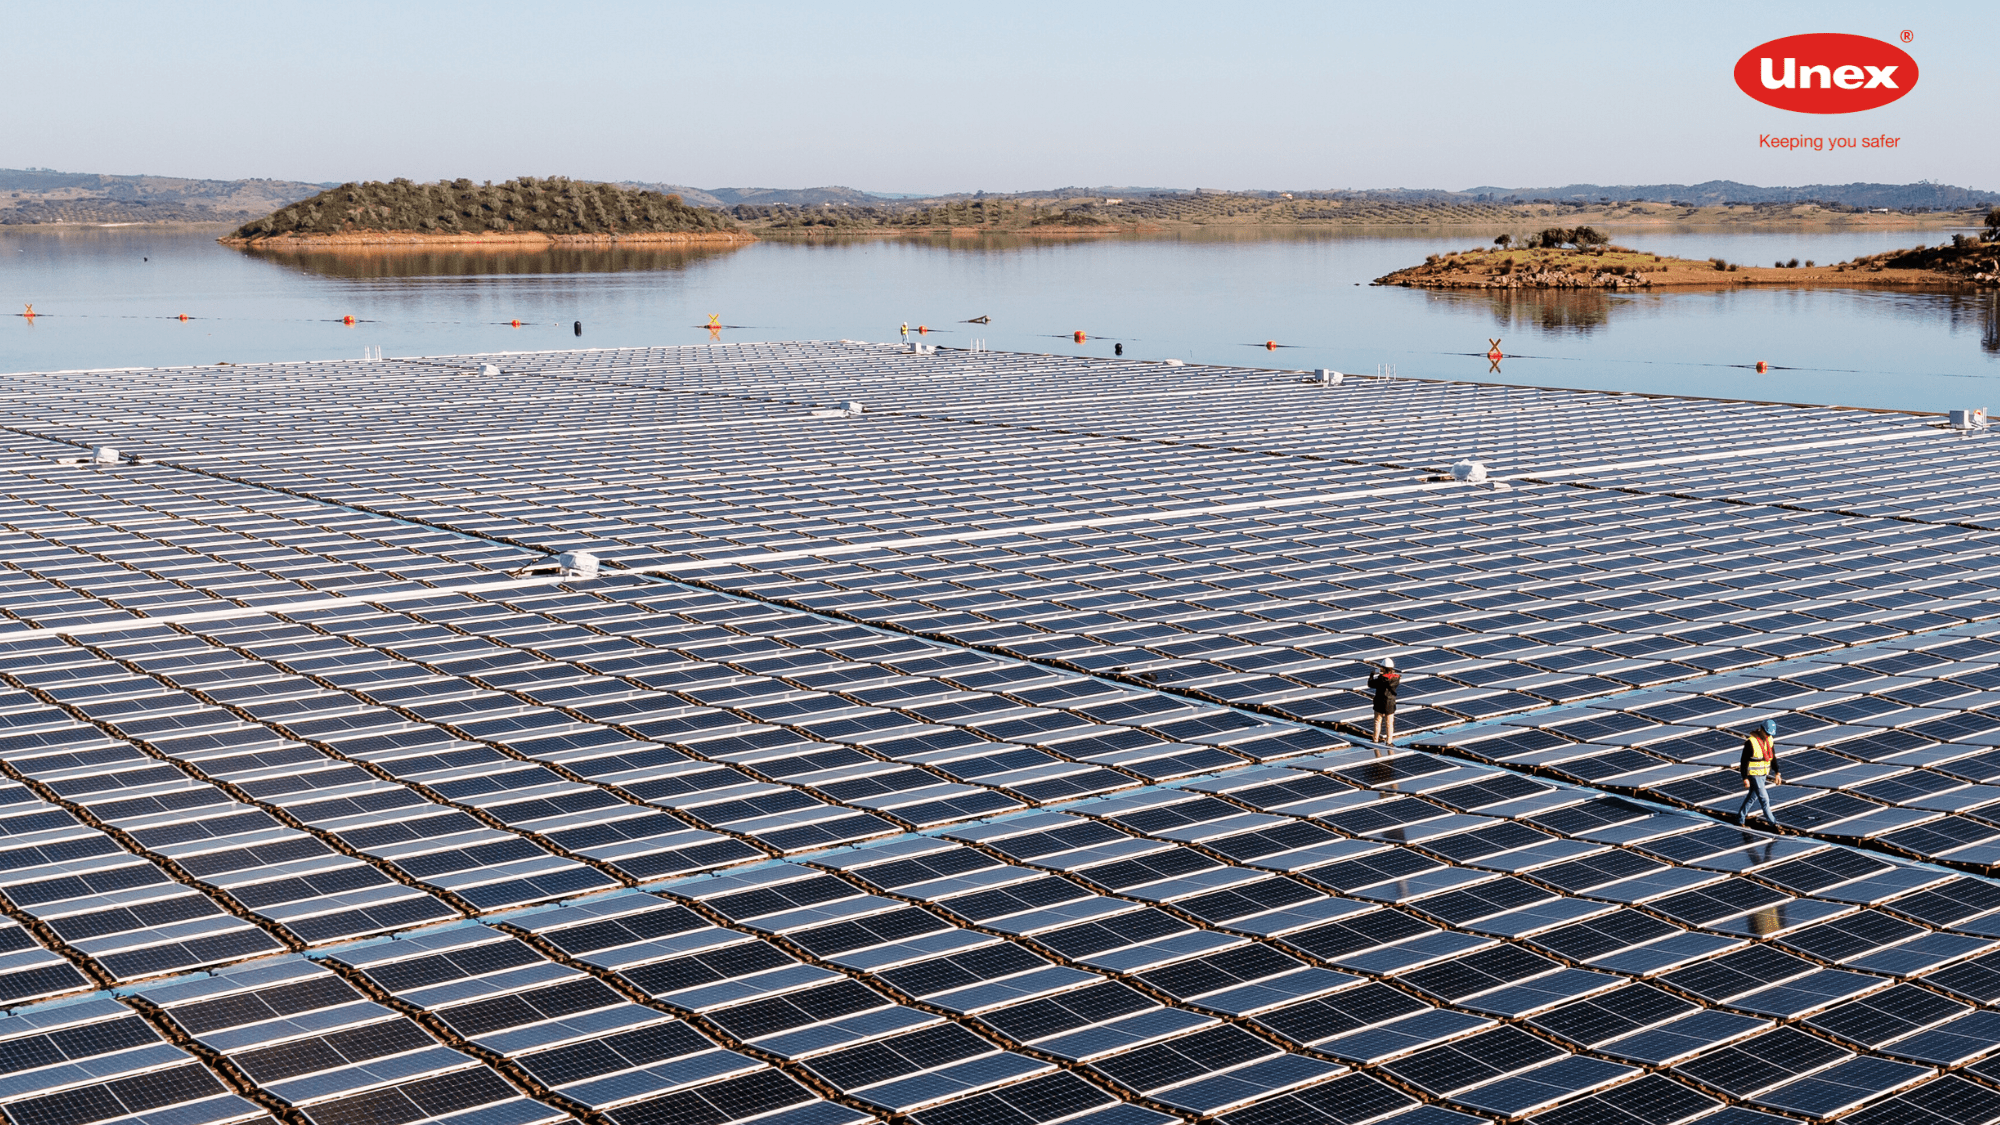 Bandeja 66 Unex en la planta fotovoltaica flotante más innovadora de Europa